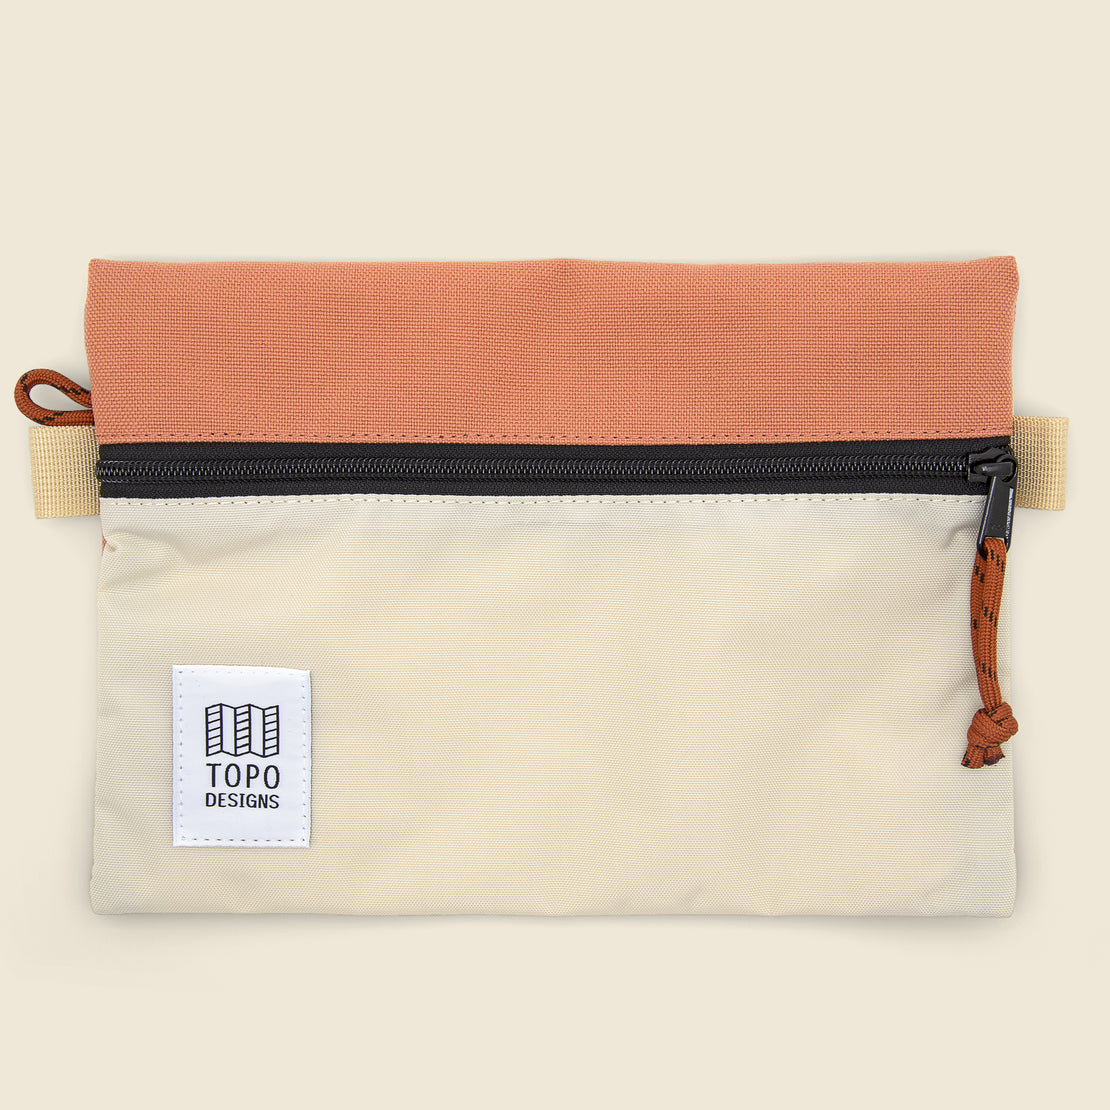 Topo Designs Medium Accessory Bag - Bone White/Coral